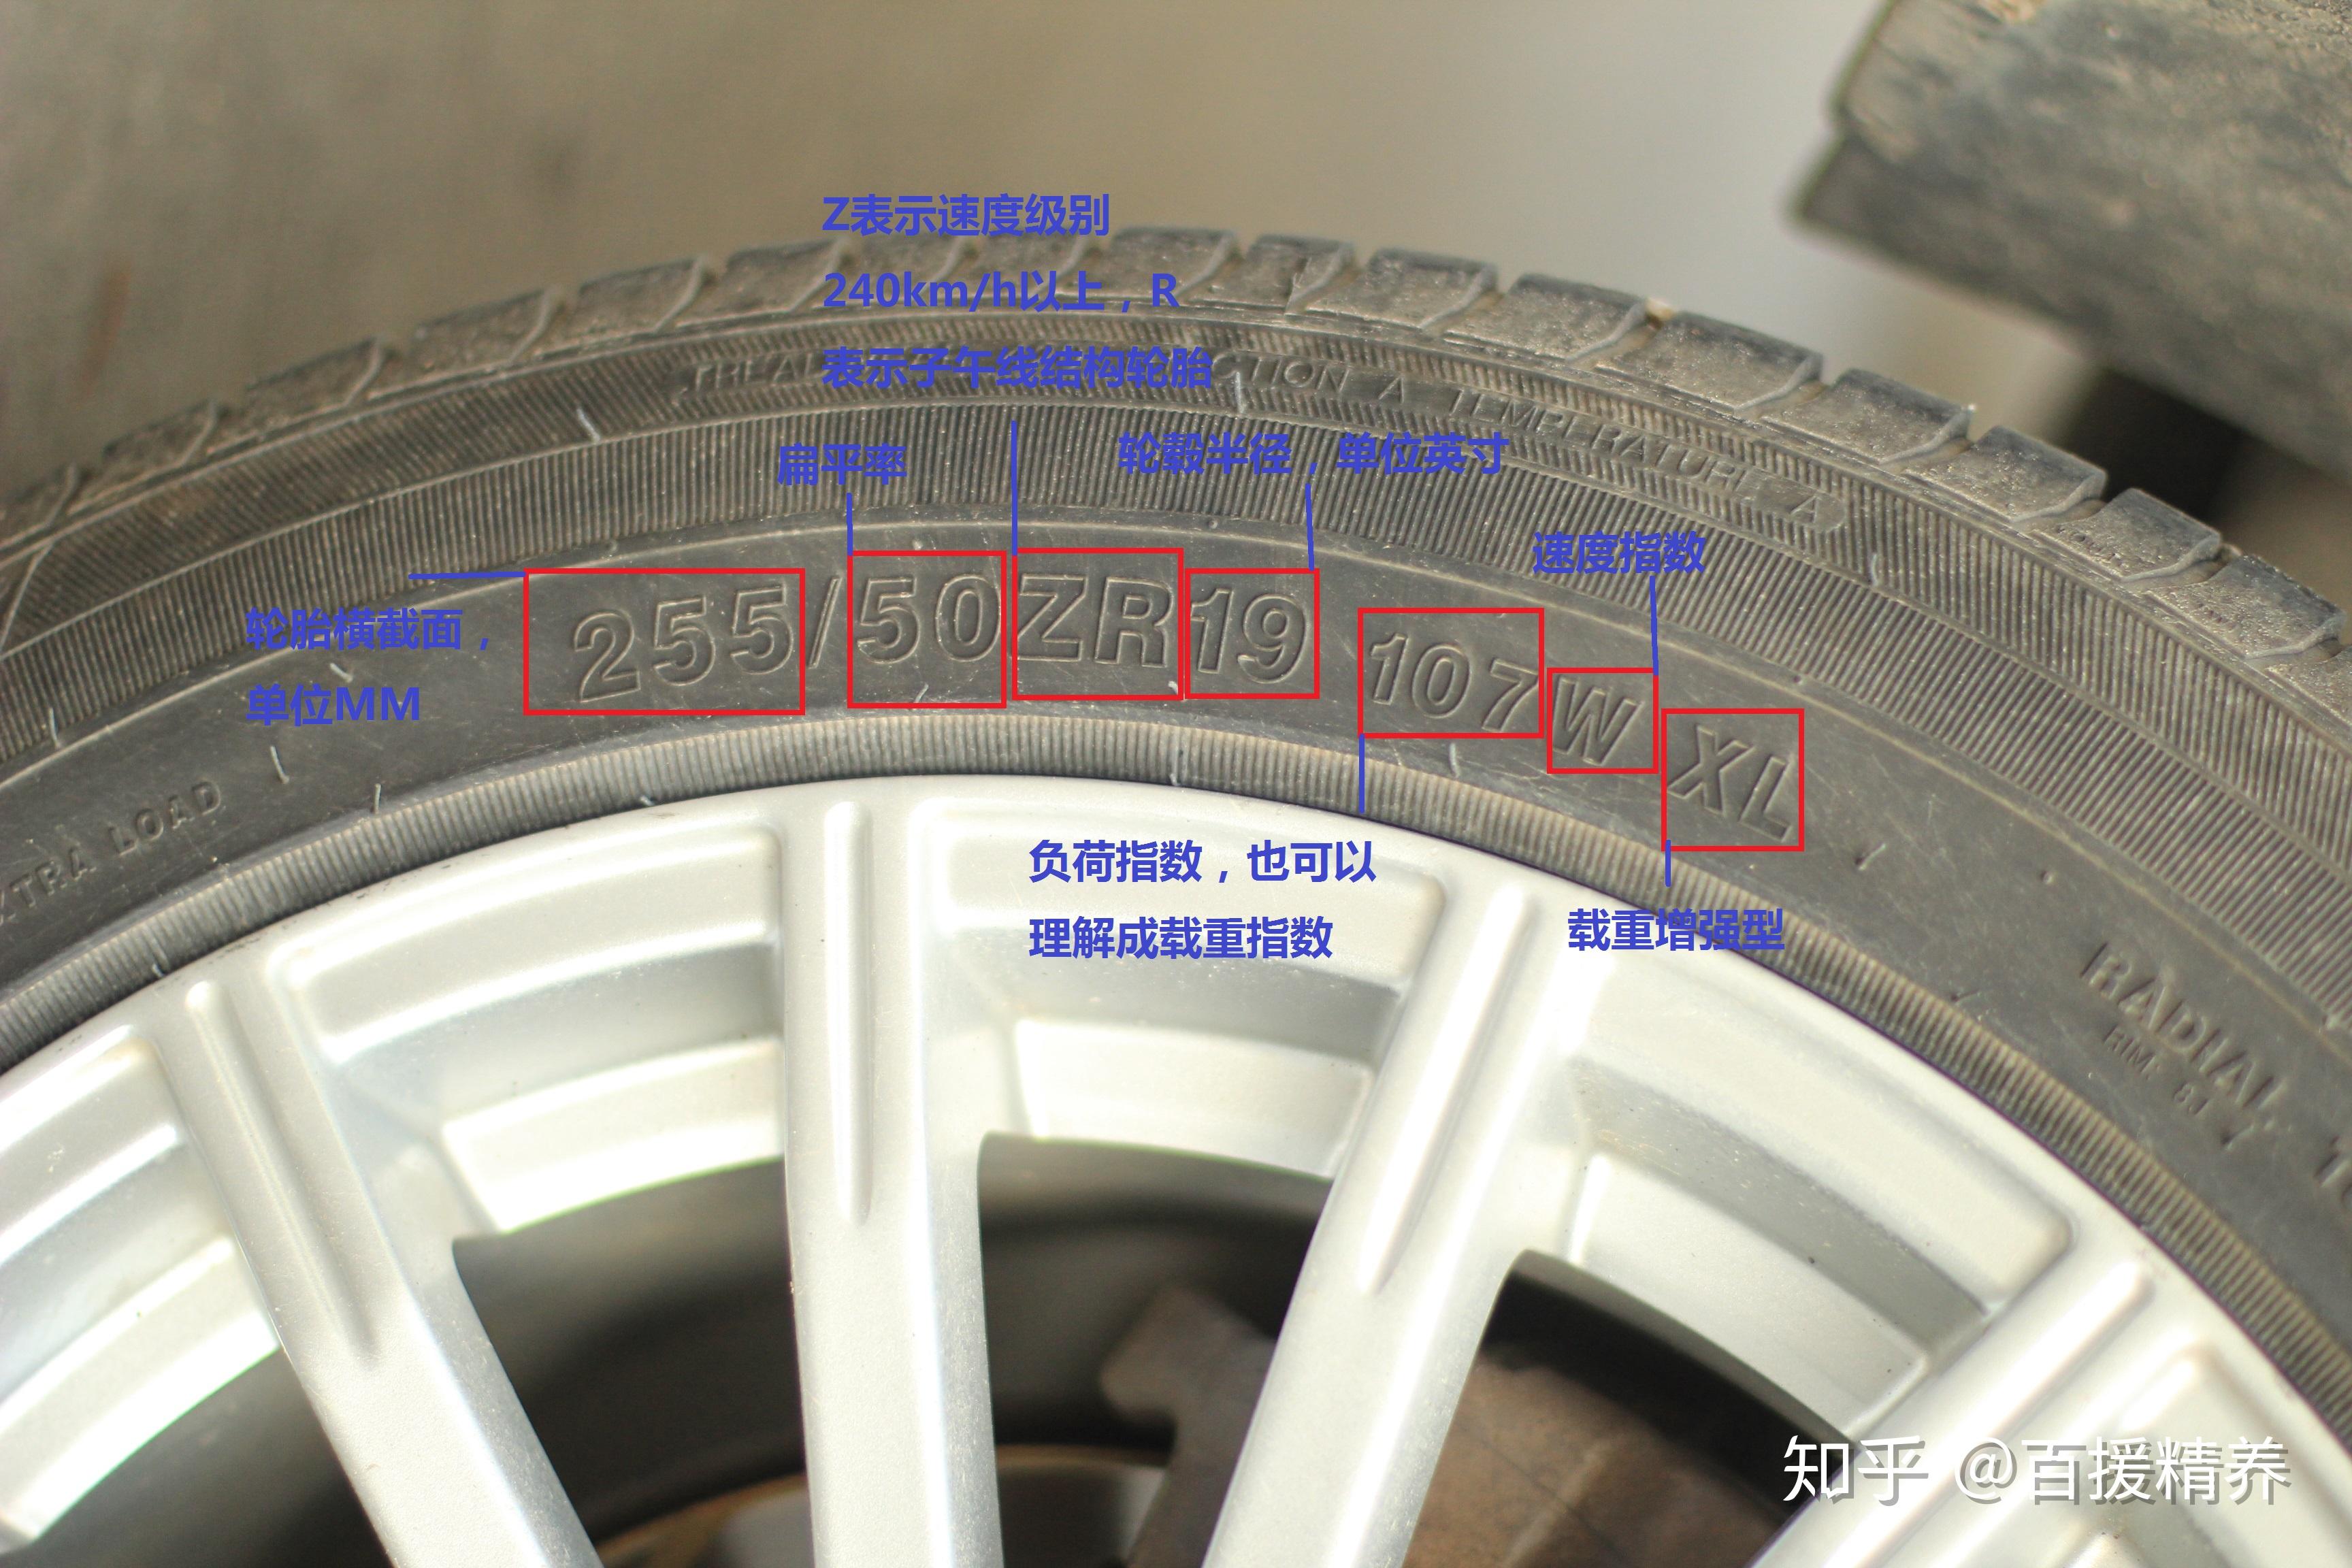 65:表示该轮胎的扁平率,该参数比较大,增强了车辆通过性;r:表示该轮胎